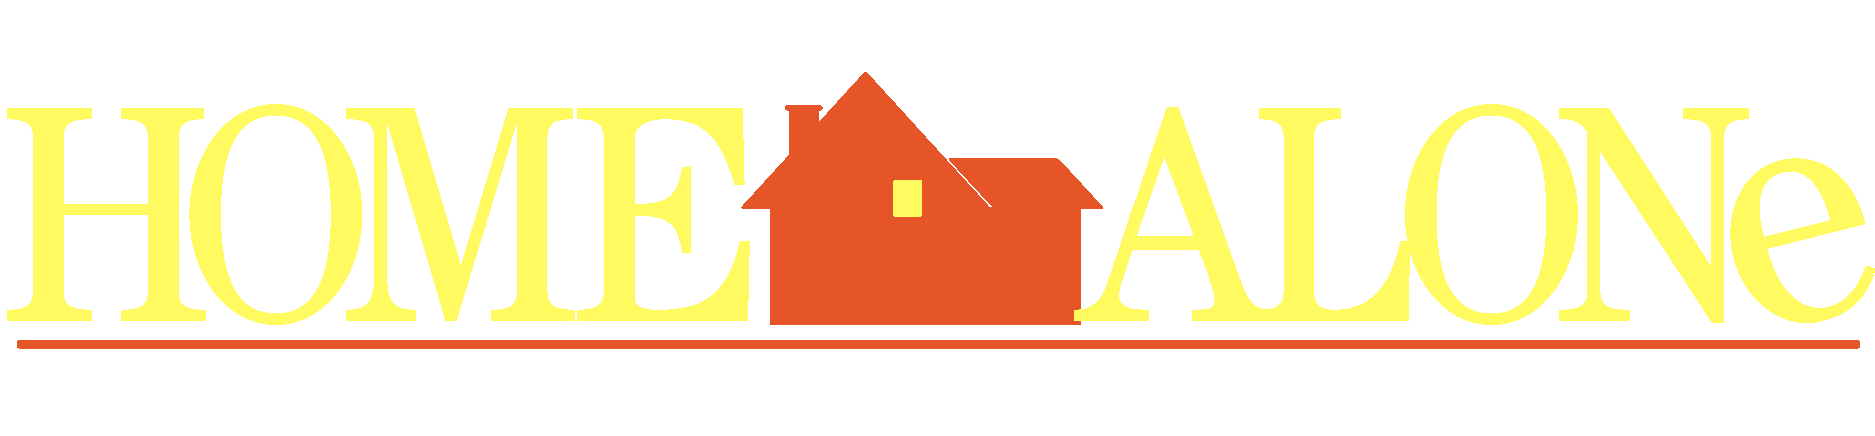 How to draw the HOME ALONe logo - YouTube-nextbuild.com.vn